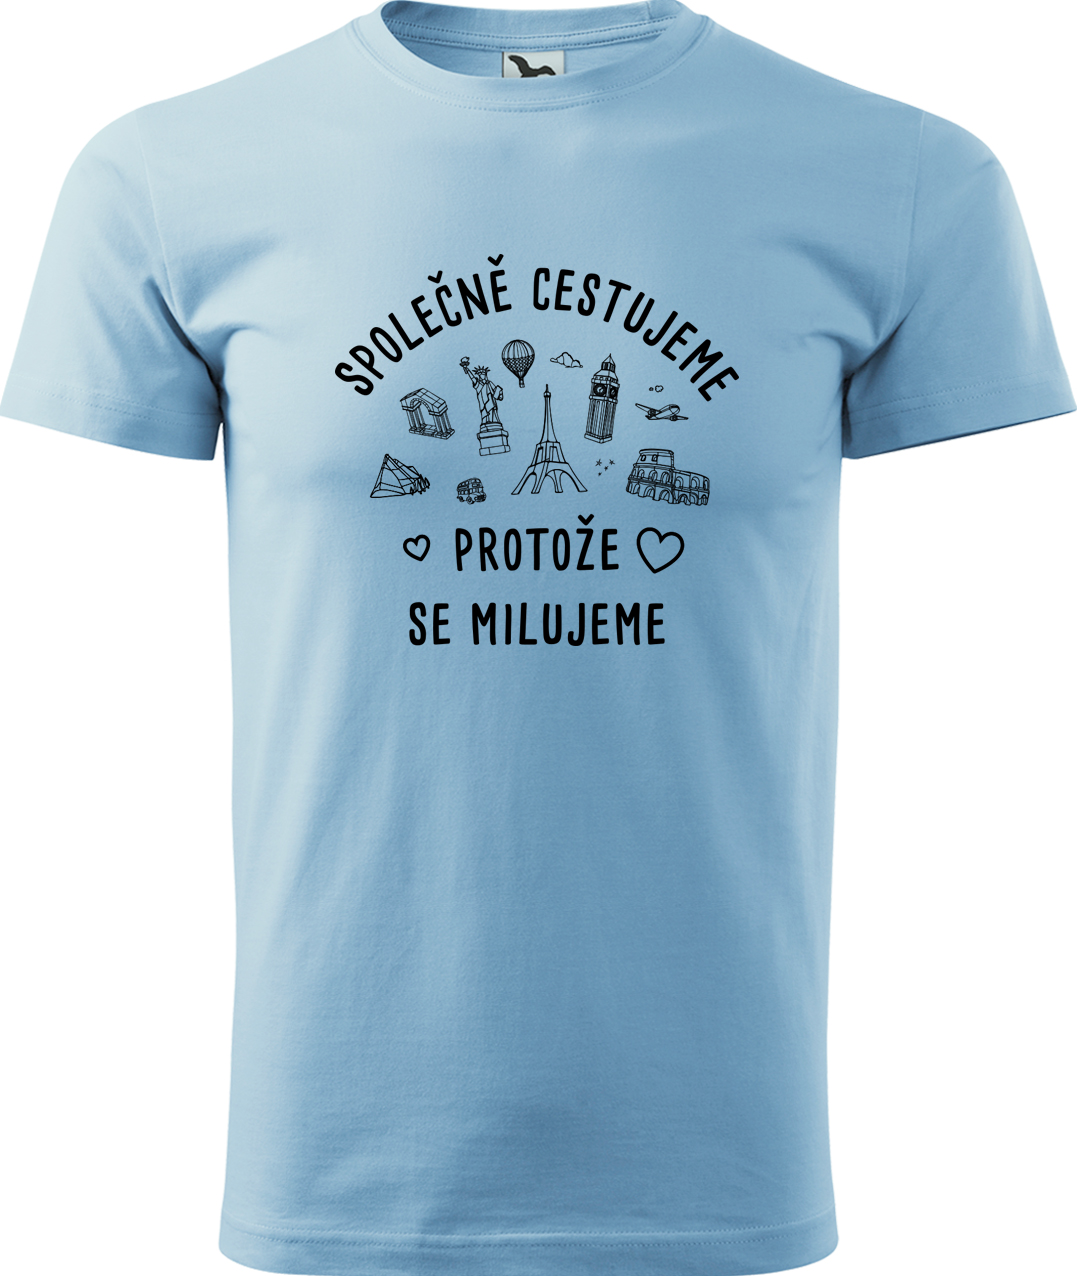 Pánské cestovatelské tričko - Společně cestujeme protože se milujeme Velikost: L, Barva: Nebesky modrá (15), Střih: pánský